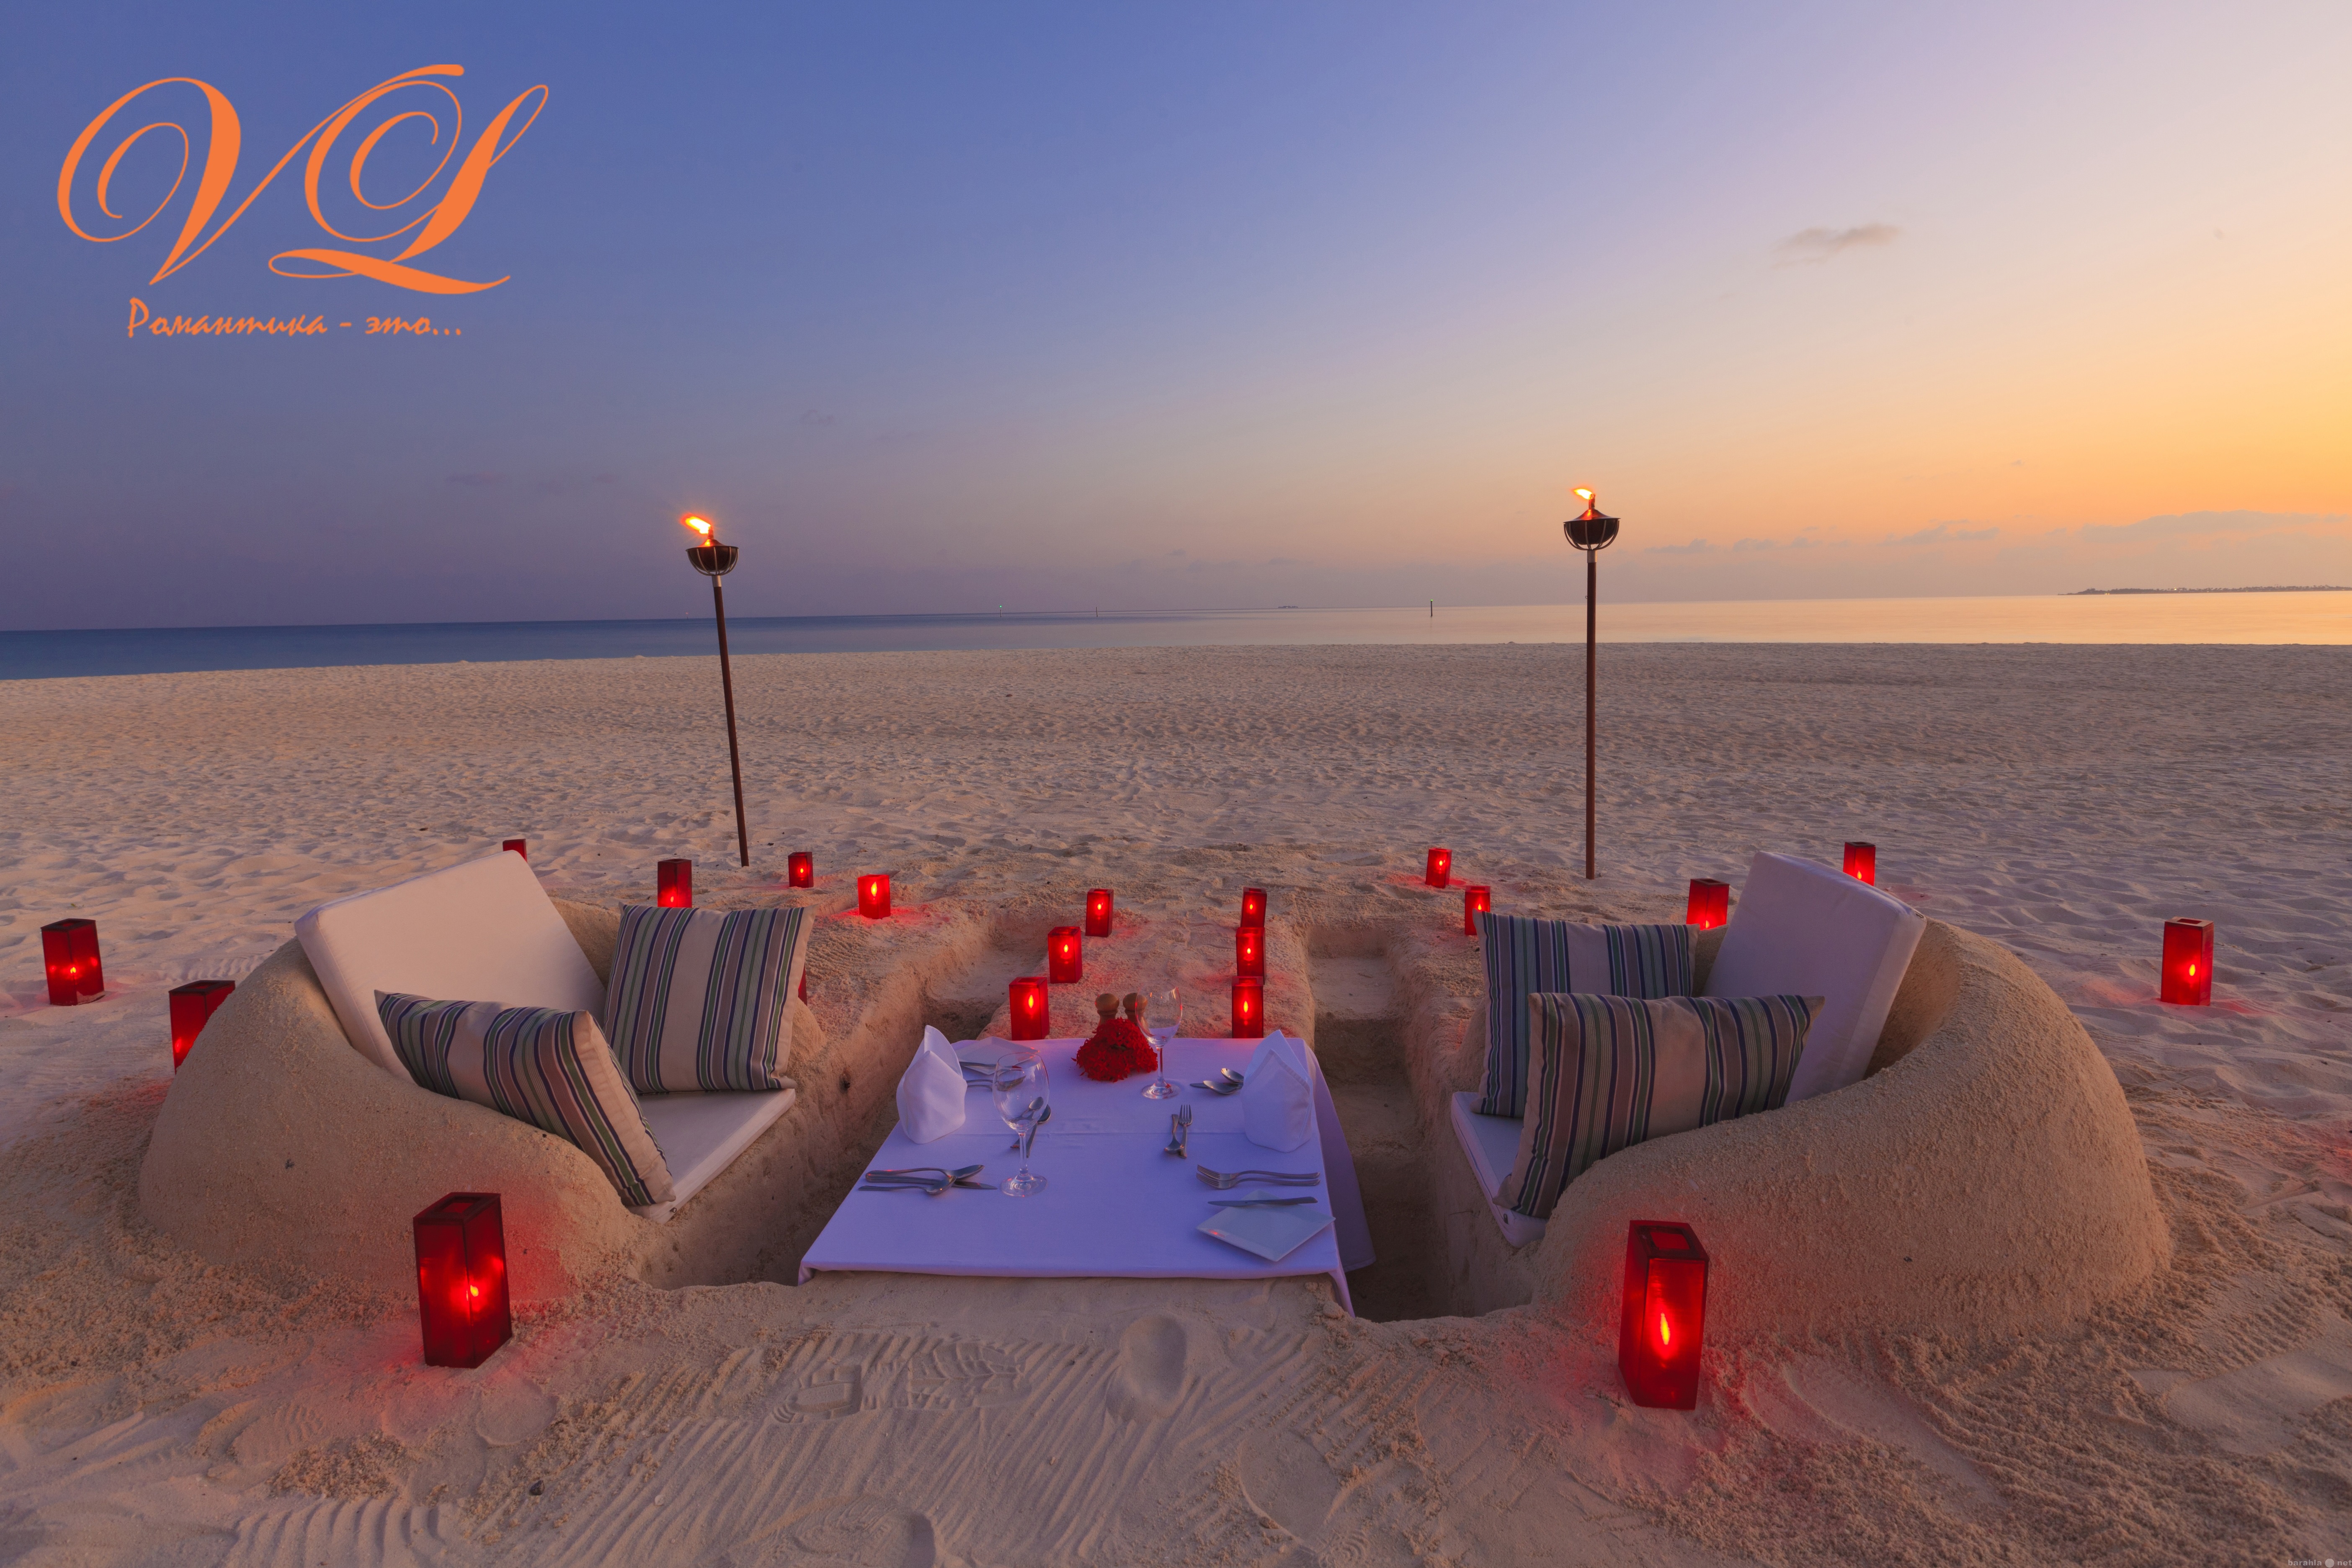 Место для ужина. Красивые романтические места. Романтичное место. Романтик на пляже. Романтический вечер.